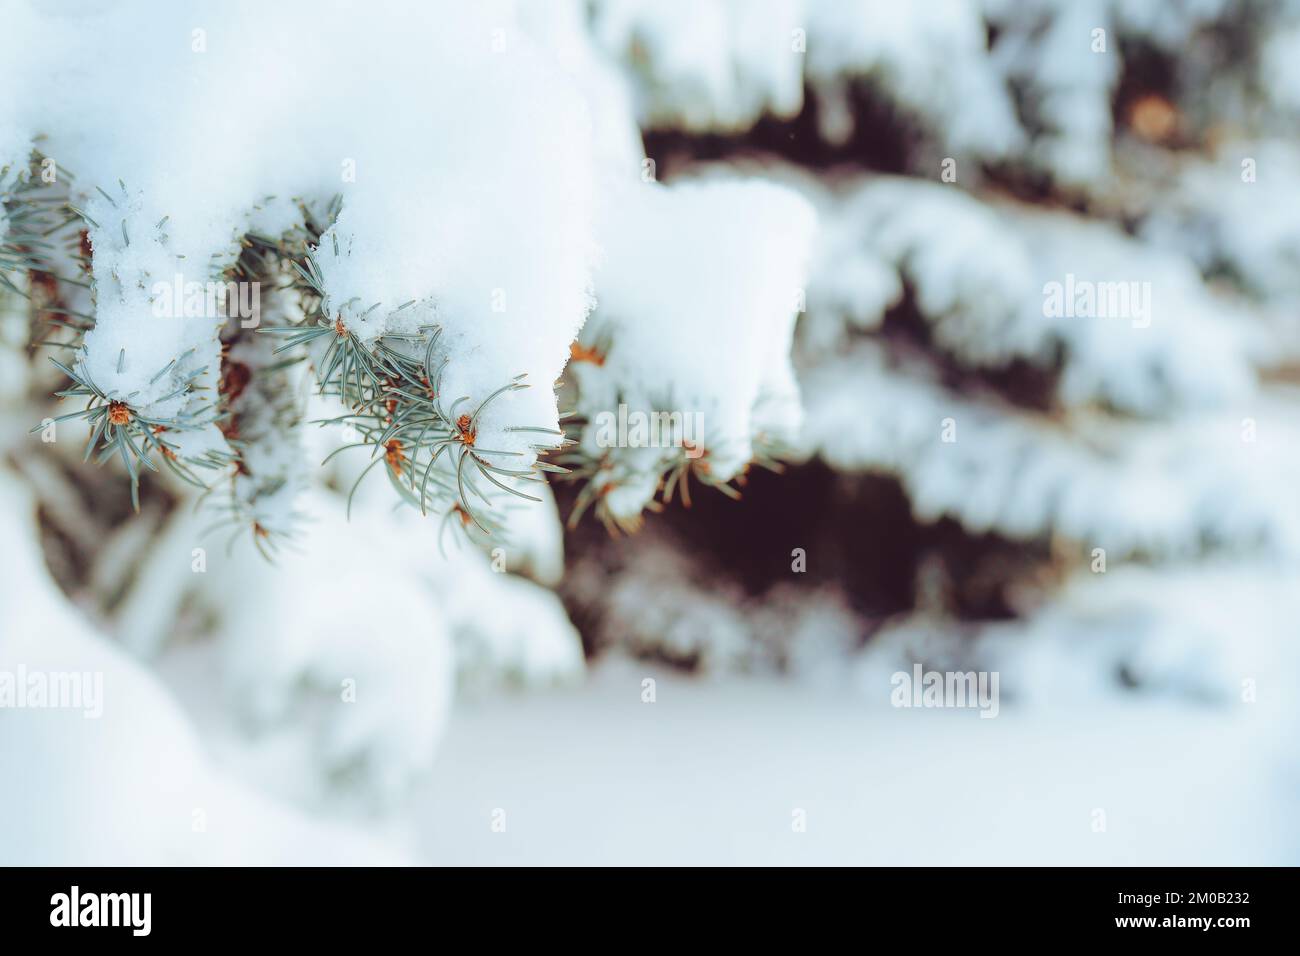 Gros plan de branche de sapin couverte de neige en forêt d'hiver. Véritable fond d'hiver et de Noël Banque D'Images